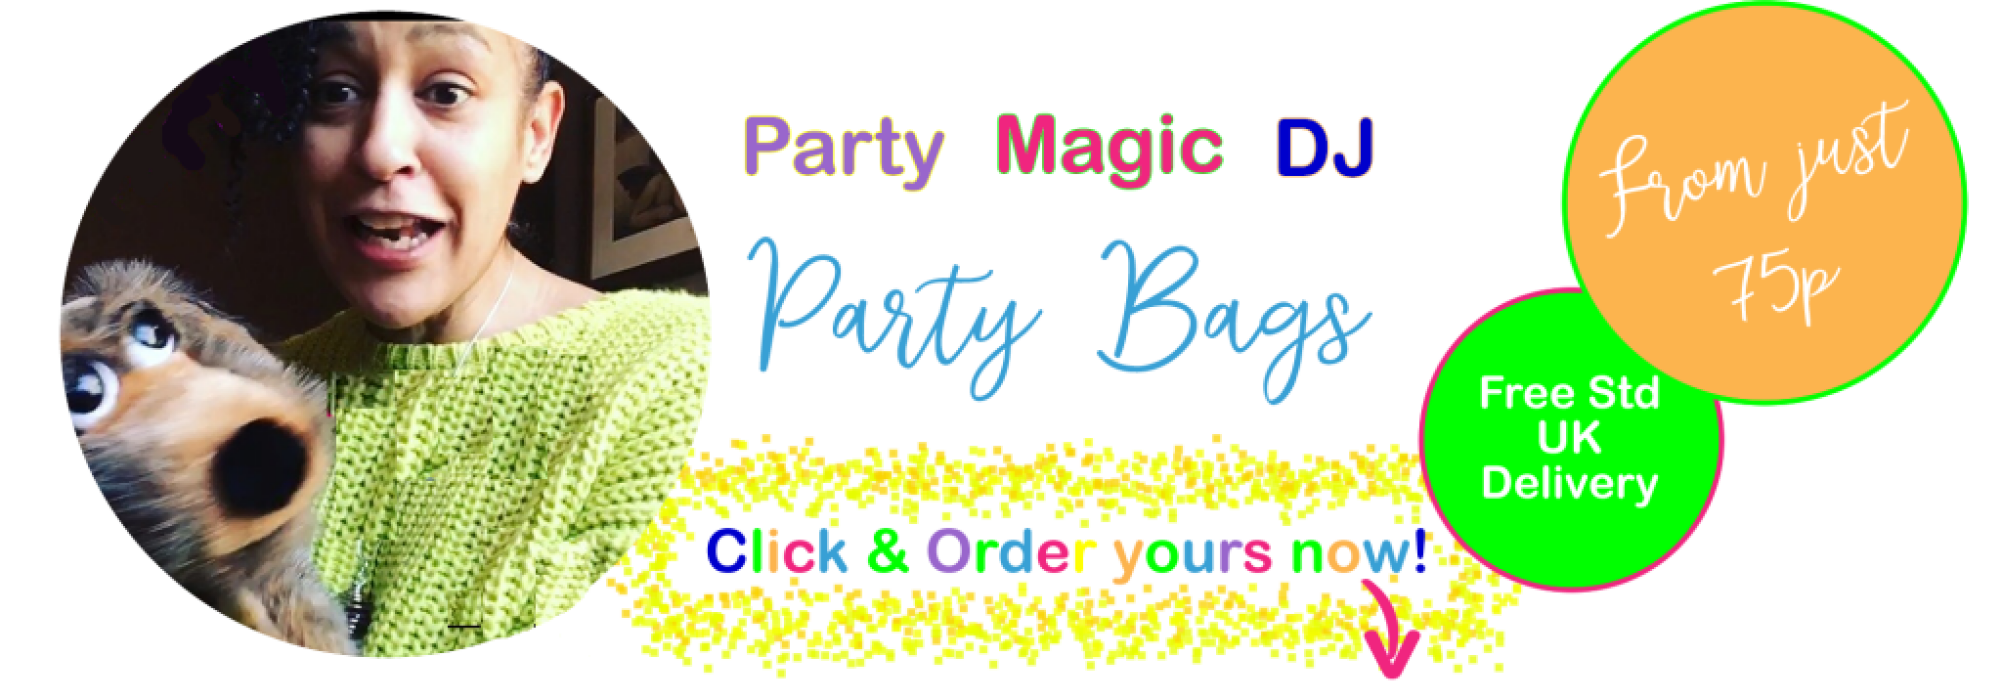 Party Magic DJ